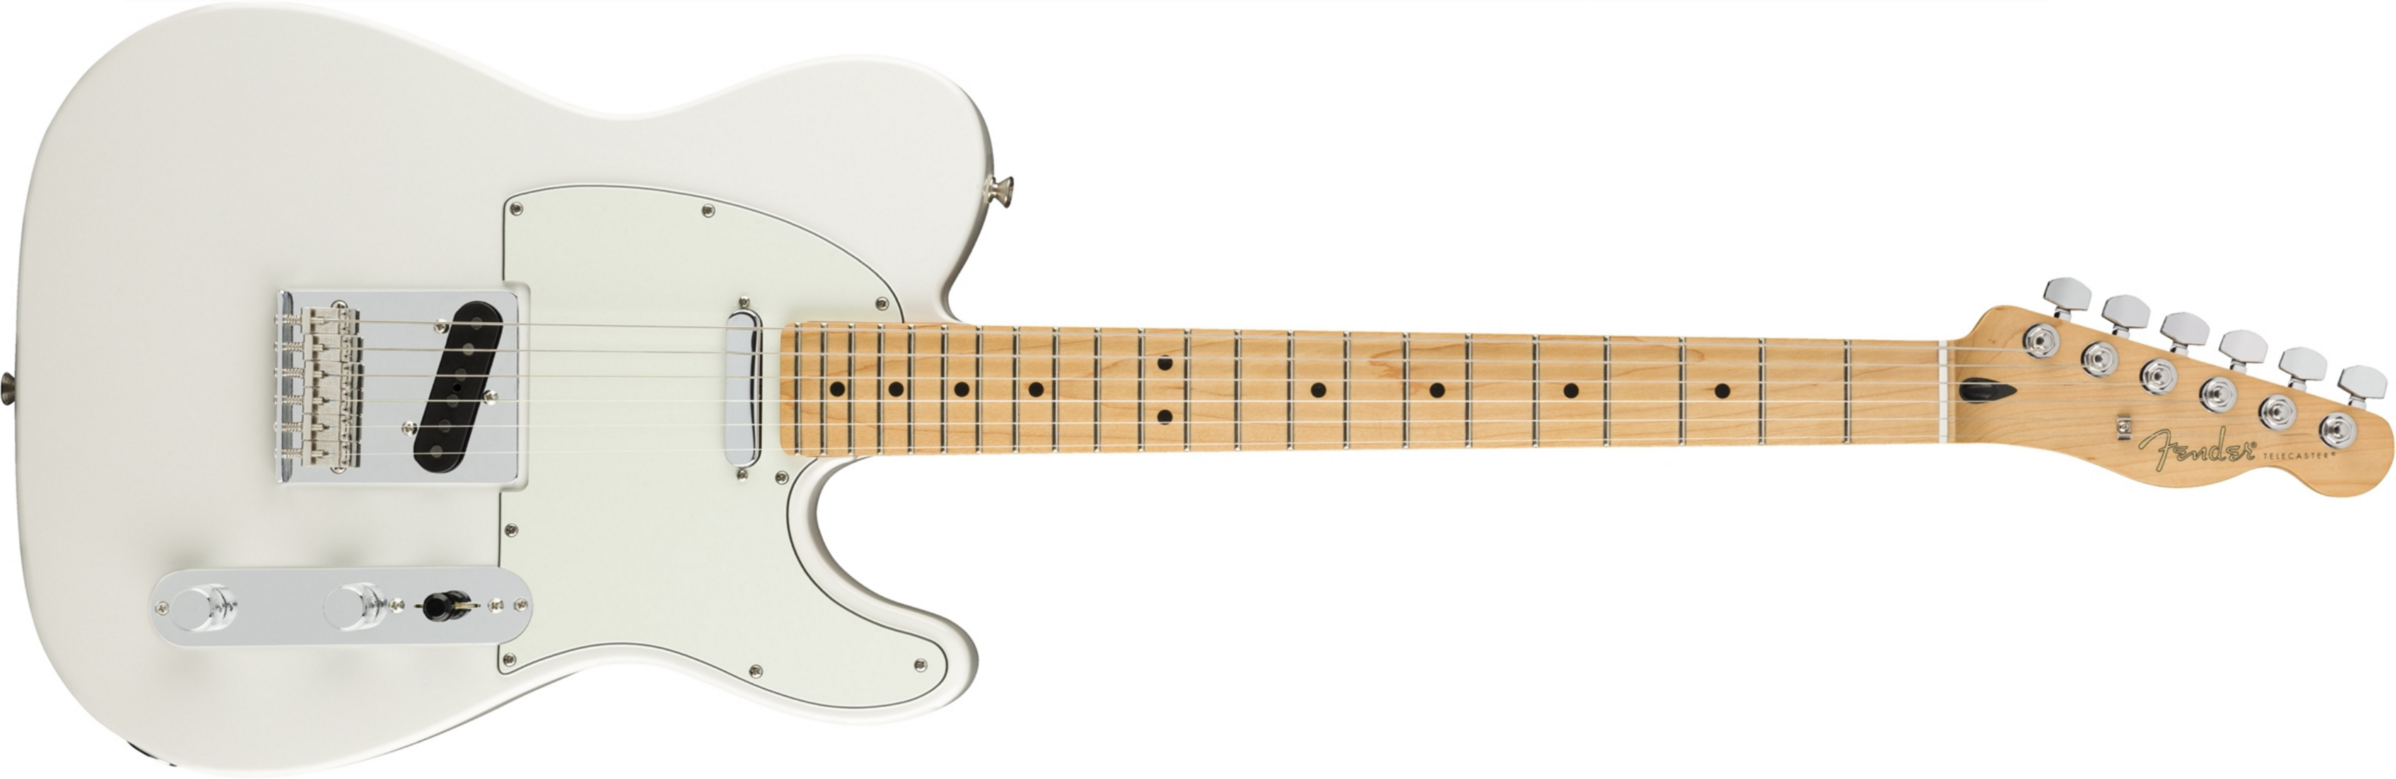 Fender Tele Player Mex Mn - Polar White - Televorm elektrische gitaar - Main picture